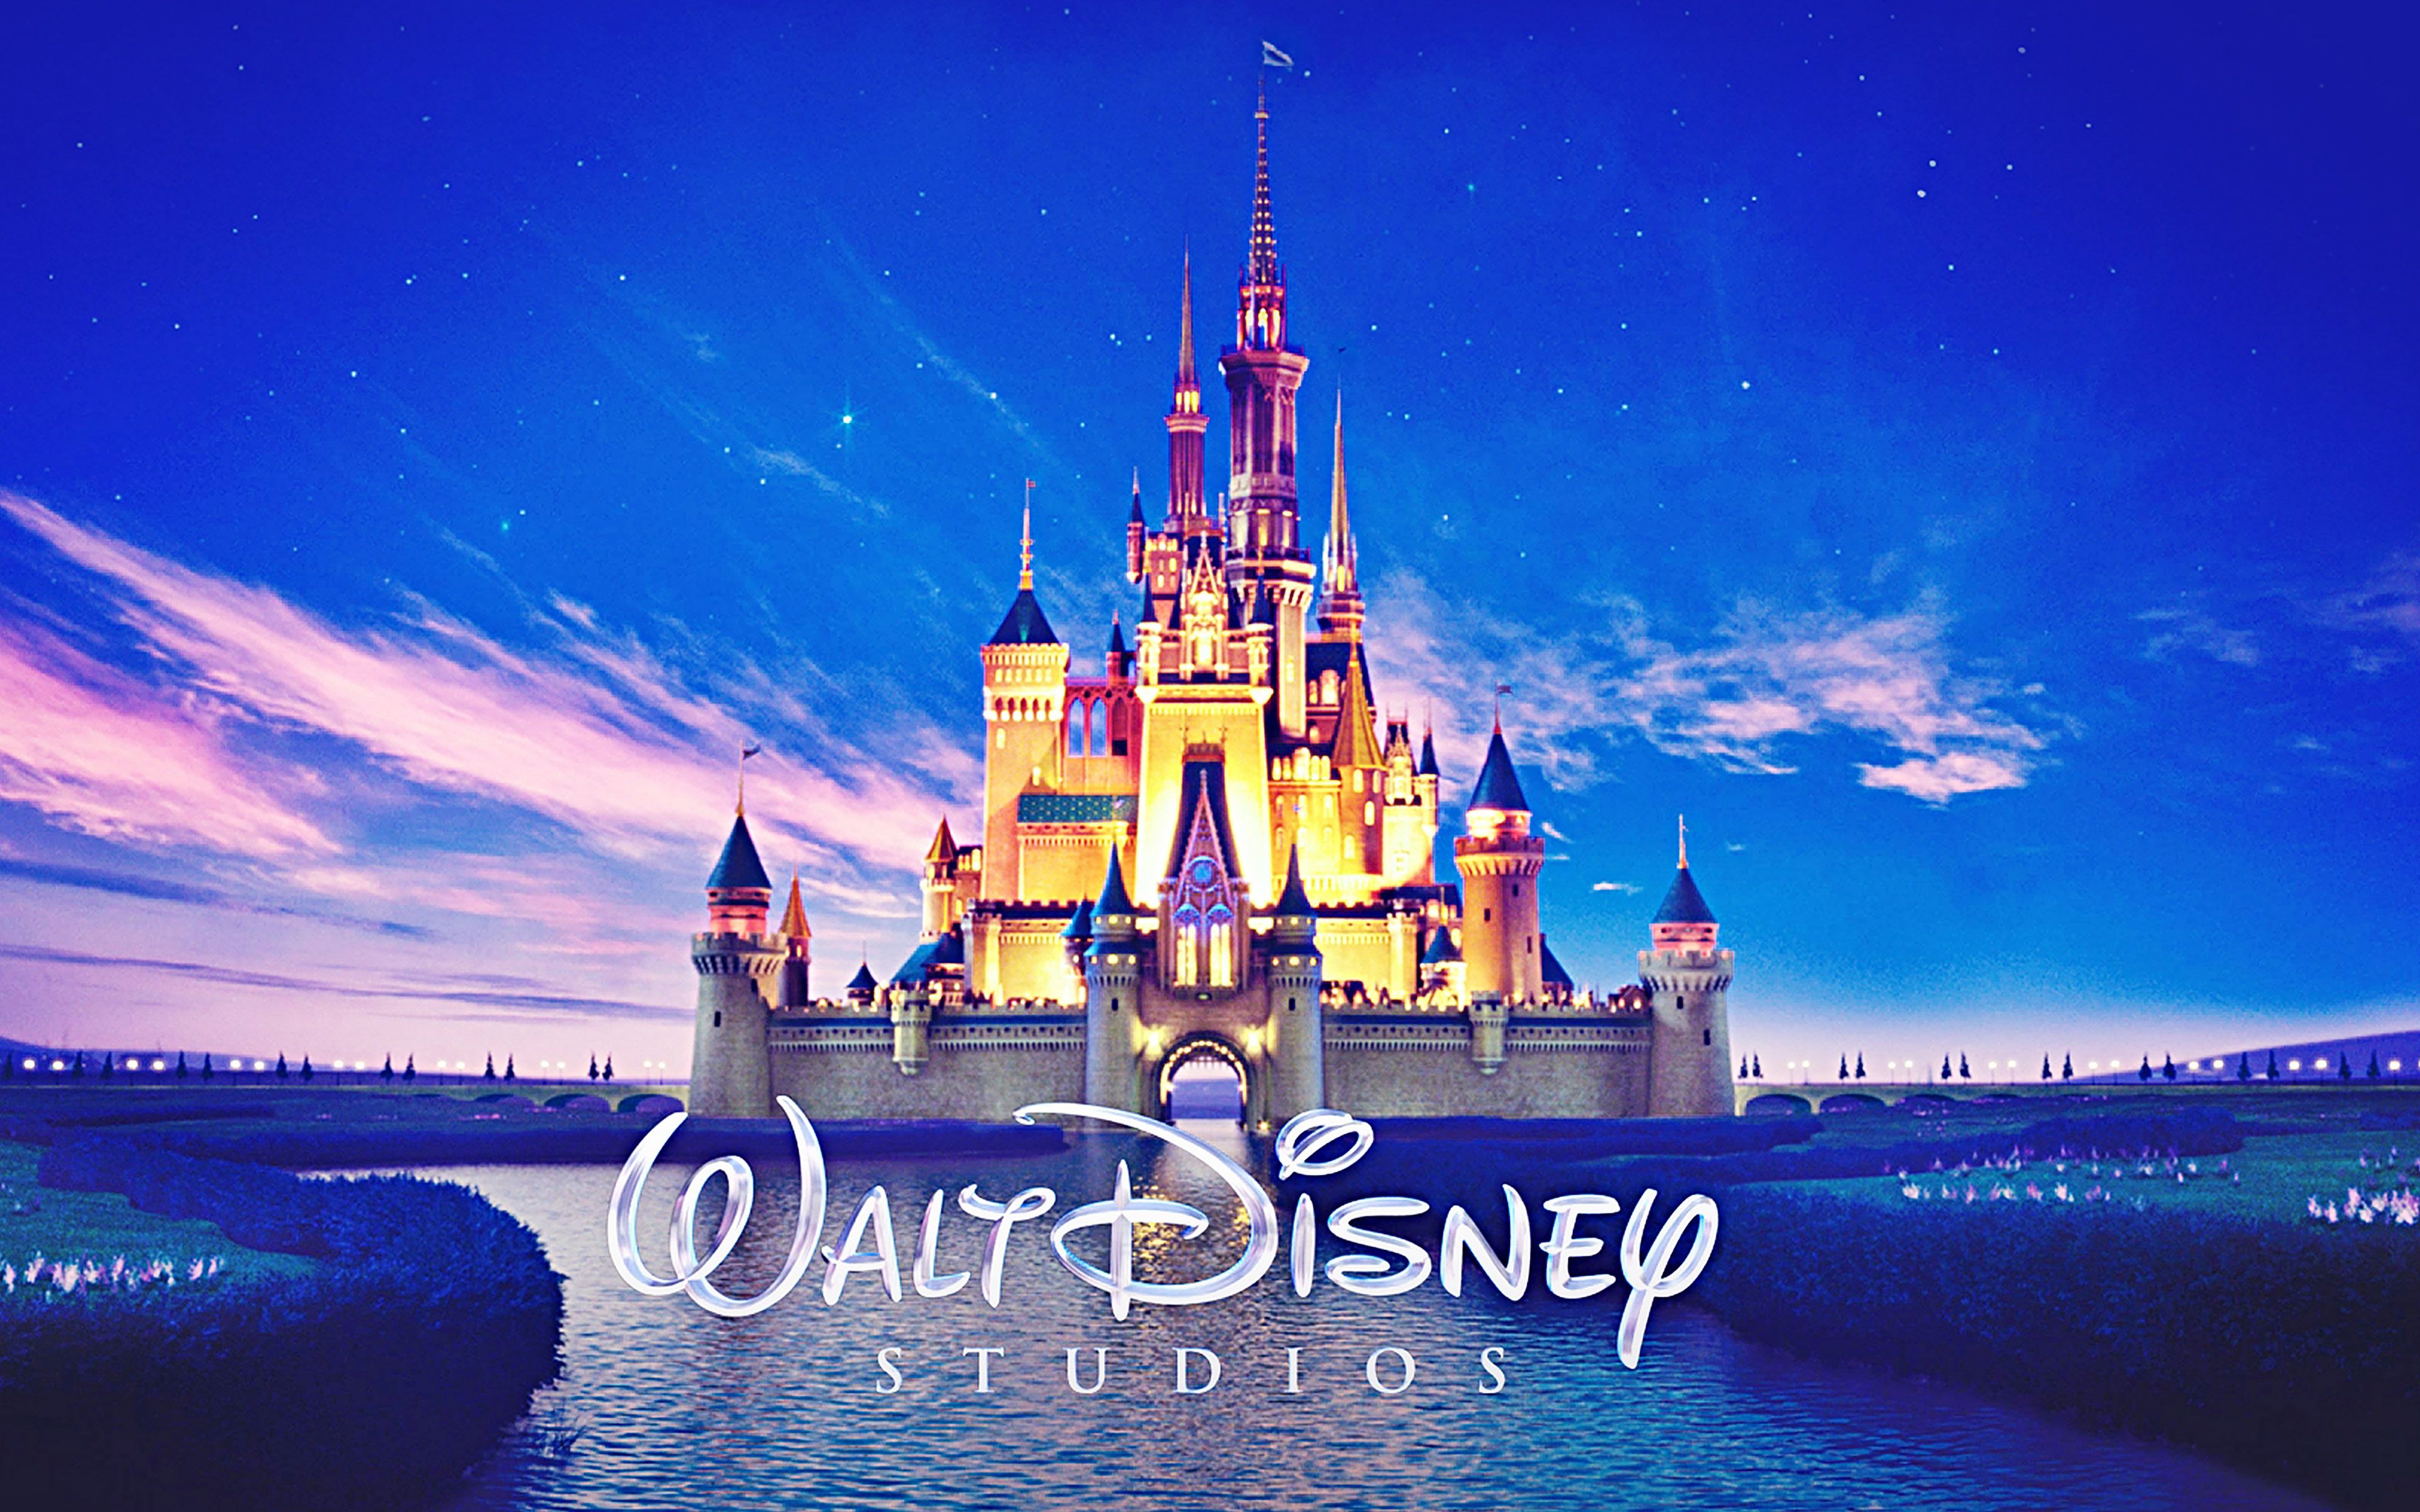 Bạn luôn muốn tìm kiếm hình ảnh chất lượng cao của Disney để tùy chỉnh màn hình của mình? Hãy sử dụng Disney Backgrounds HD để tìm kiếm những hình ảnh đầy sắc màu và đẹp mắt để tùy chỉnh máy tính hoặc điện thoại của bạn.